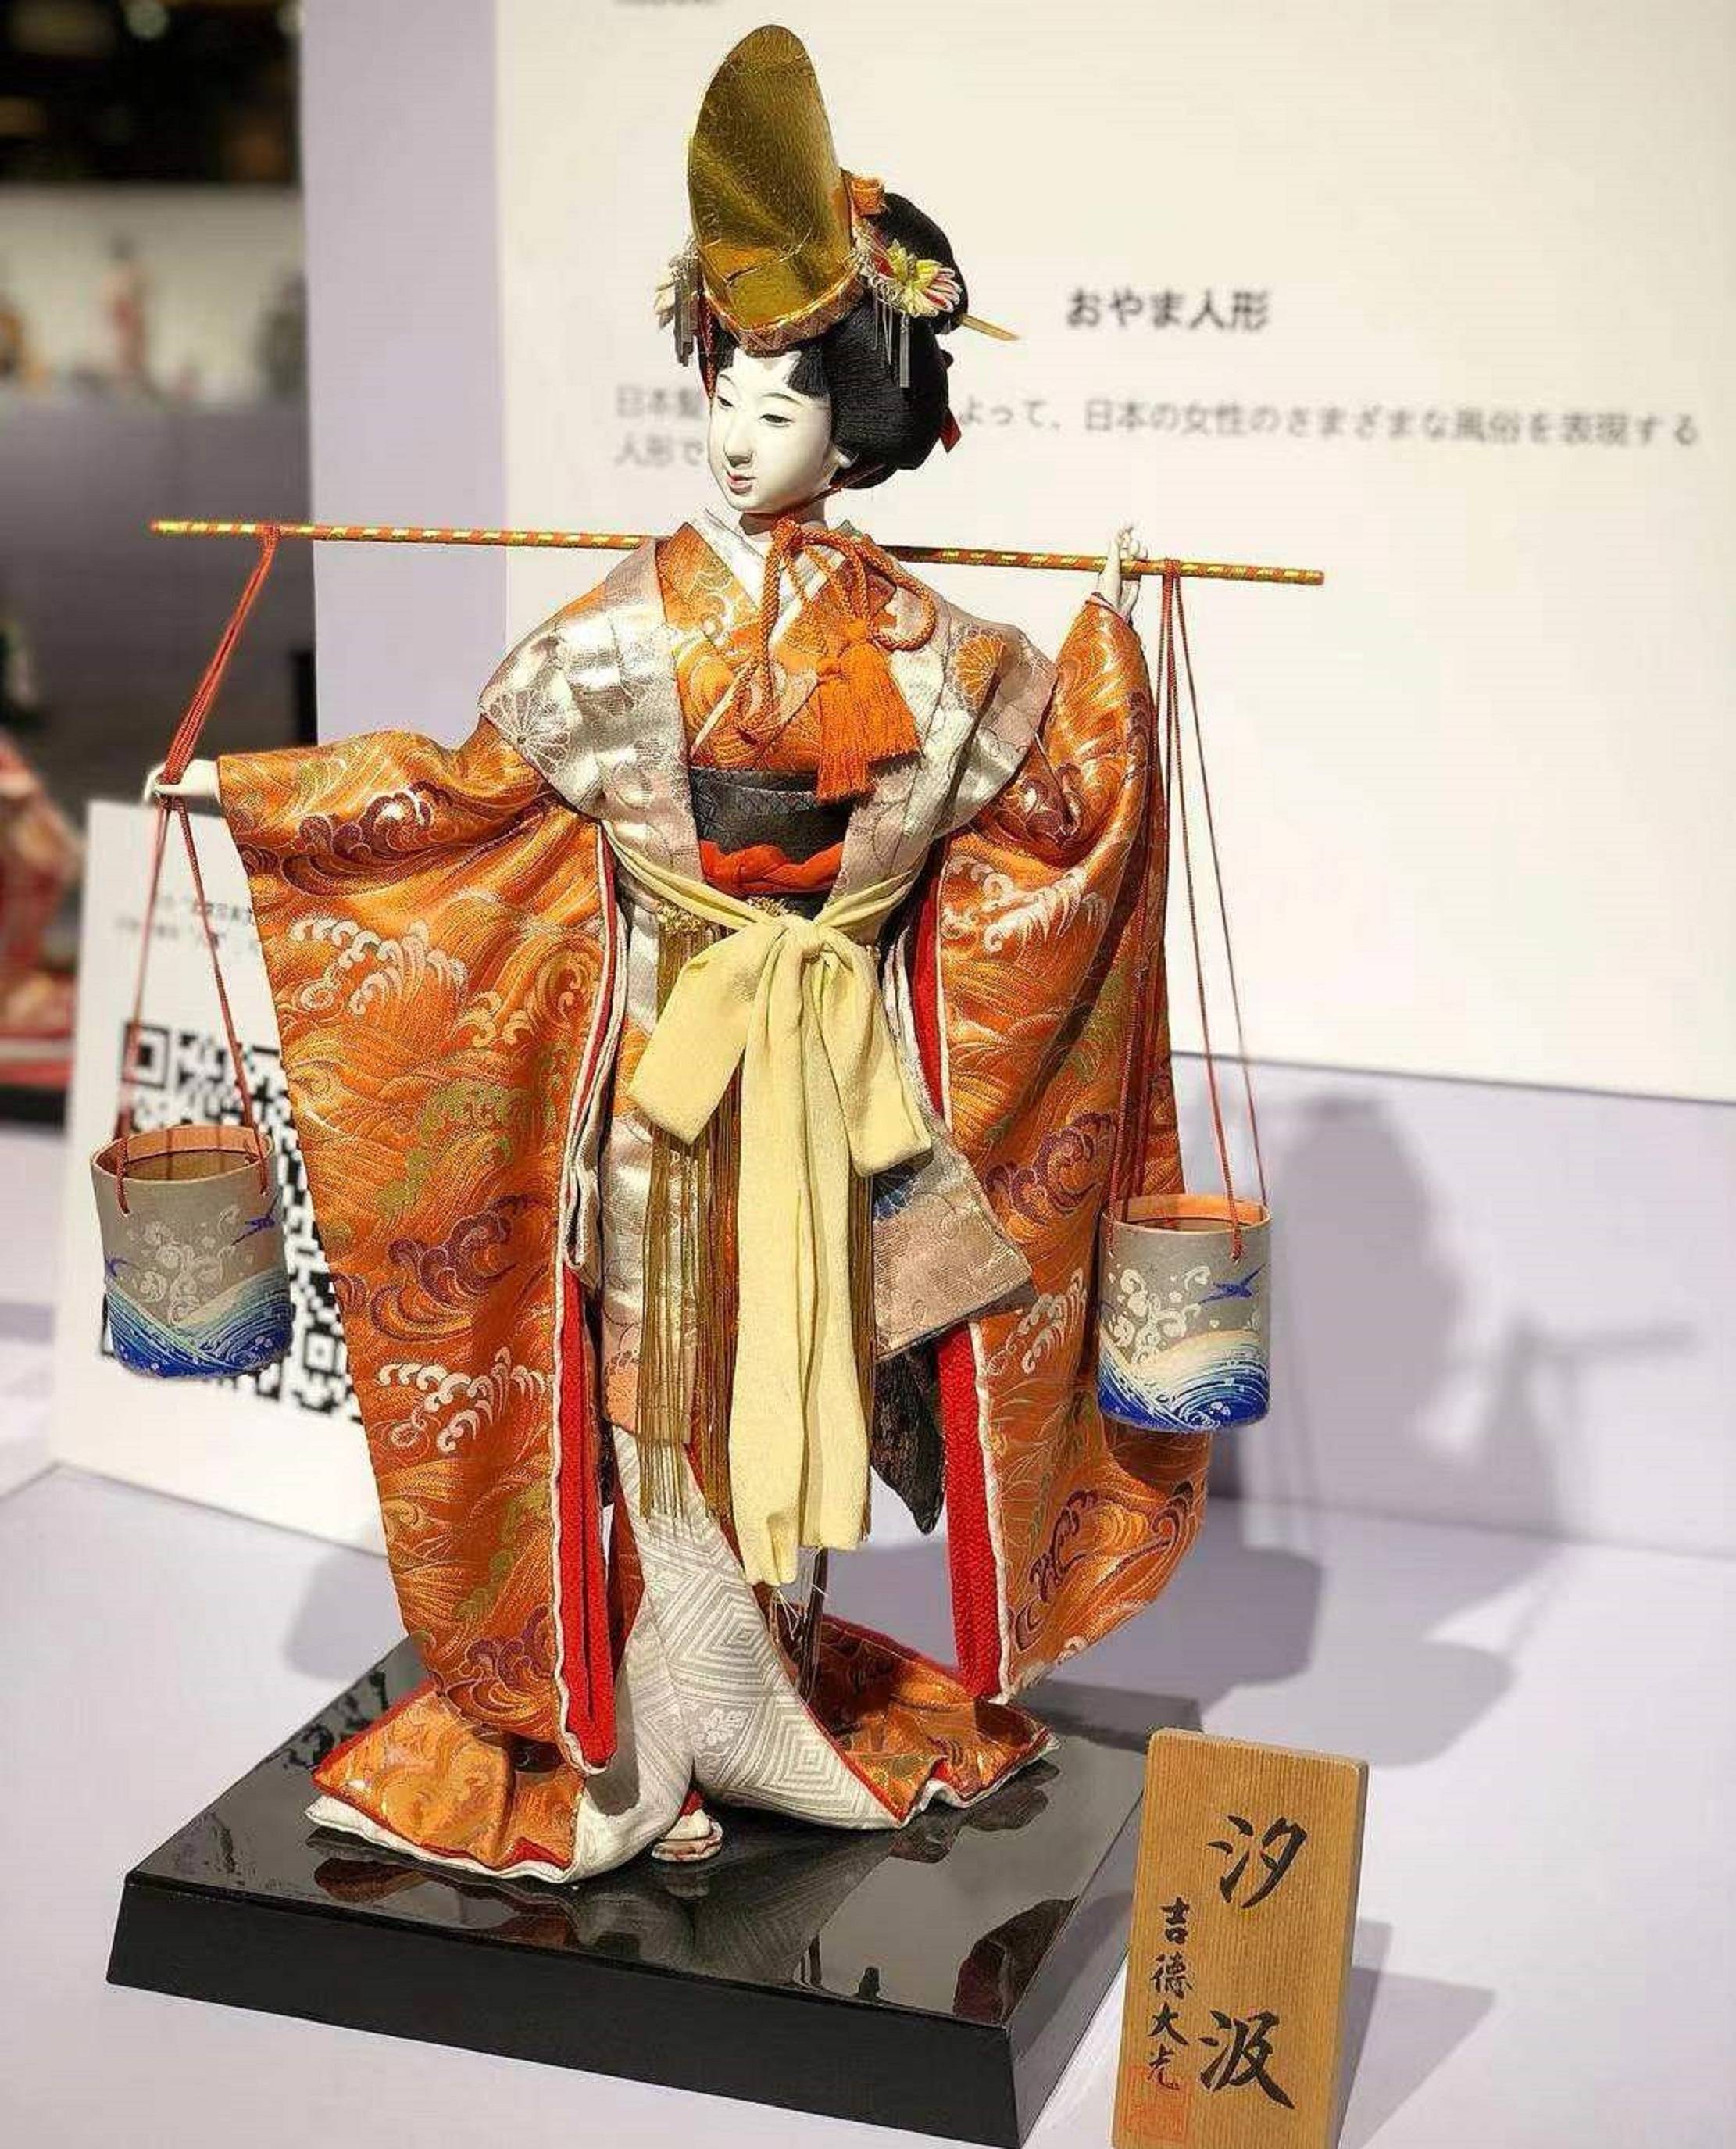 日本人偶娃娃文化图片